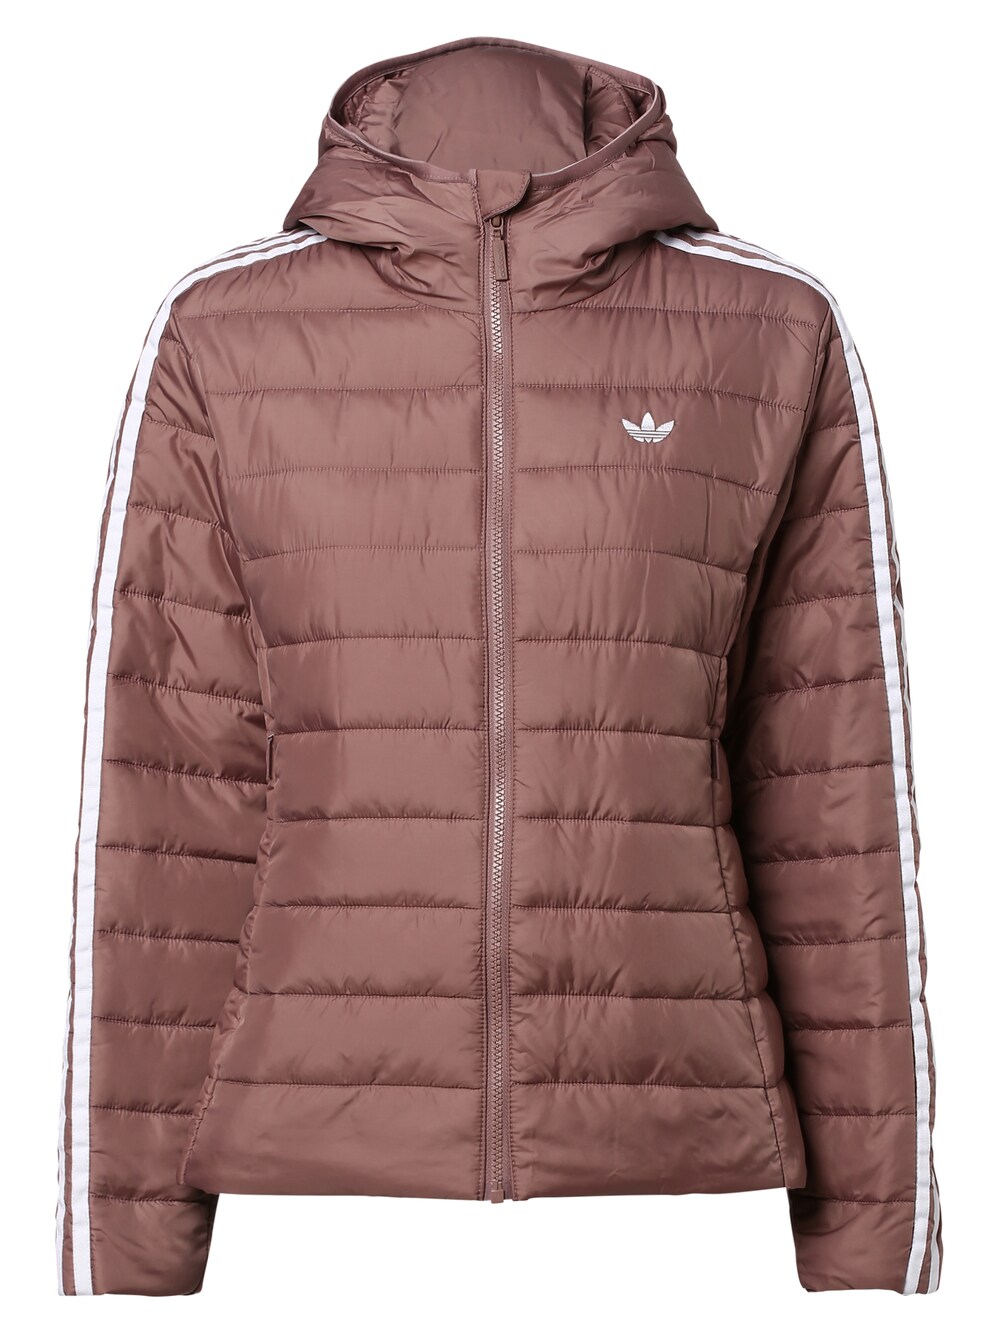 Межсезонная куртка Adidas Premium, лиловый